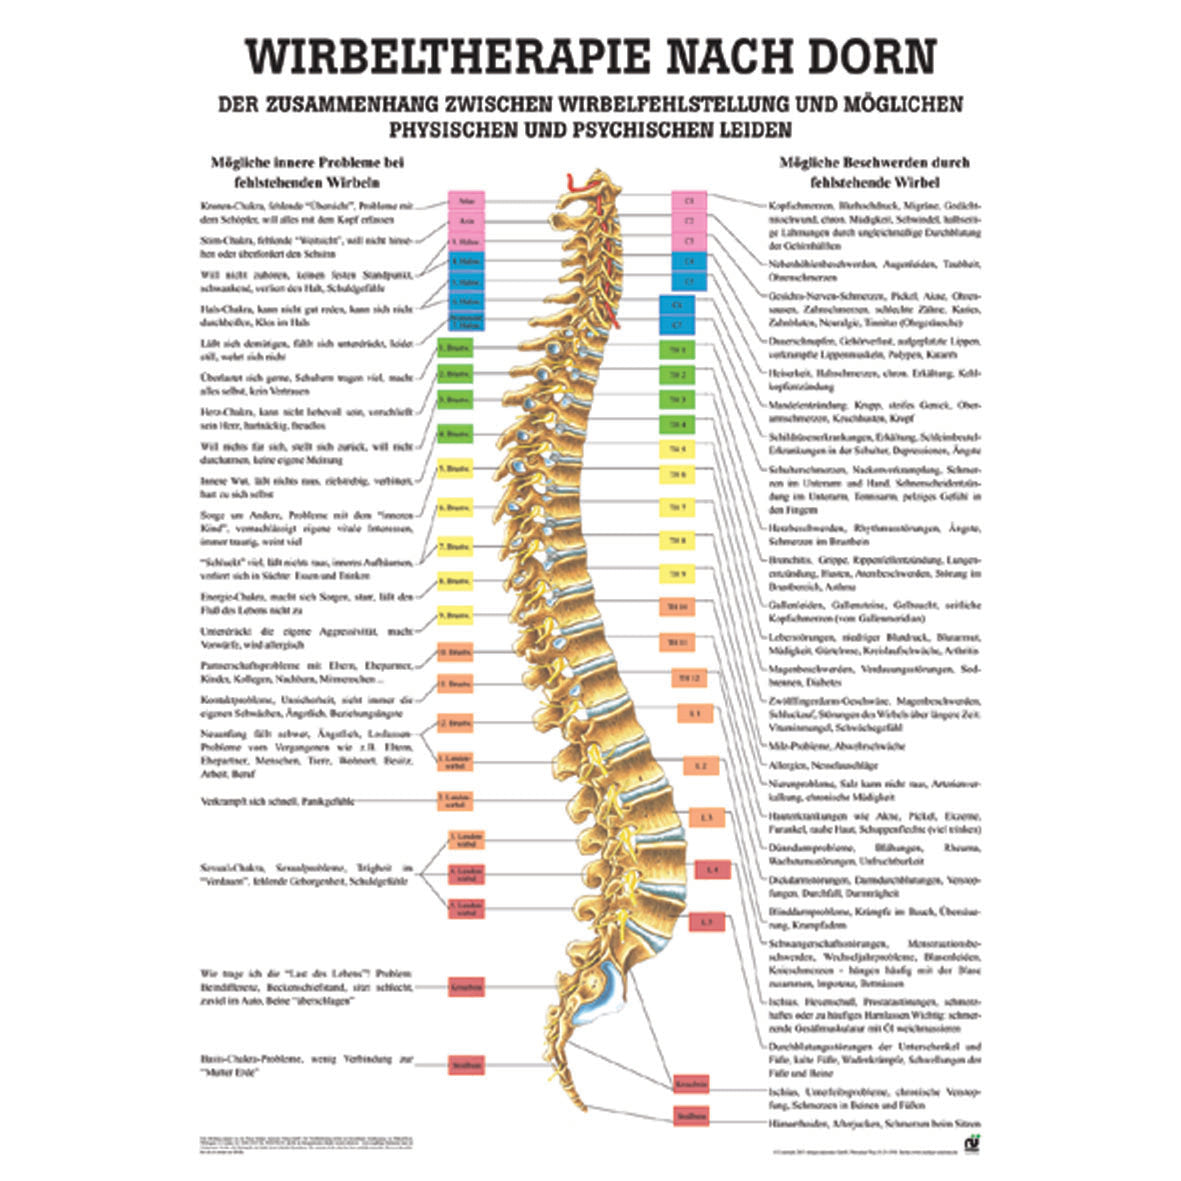 Anatomisches Poster "Wirbeltherapie nach Dorn"